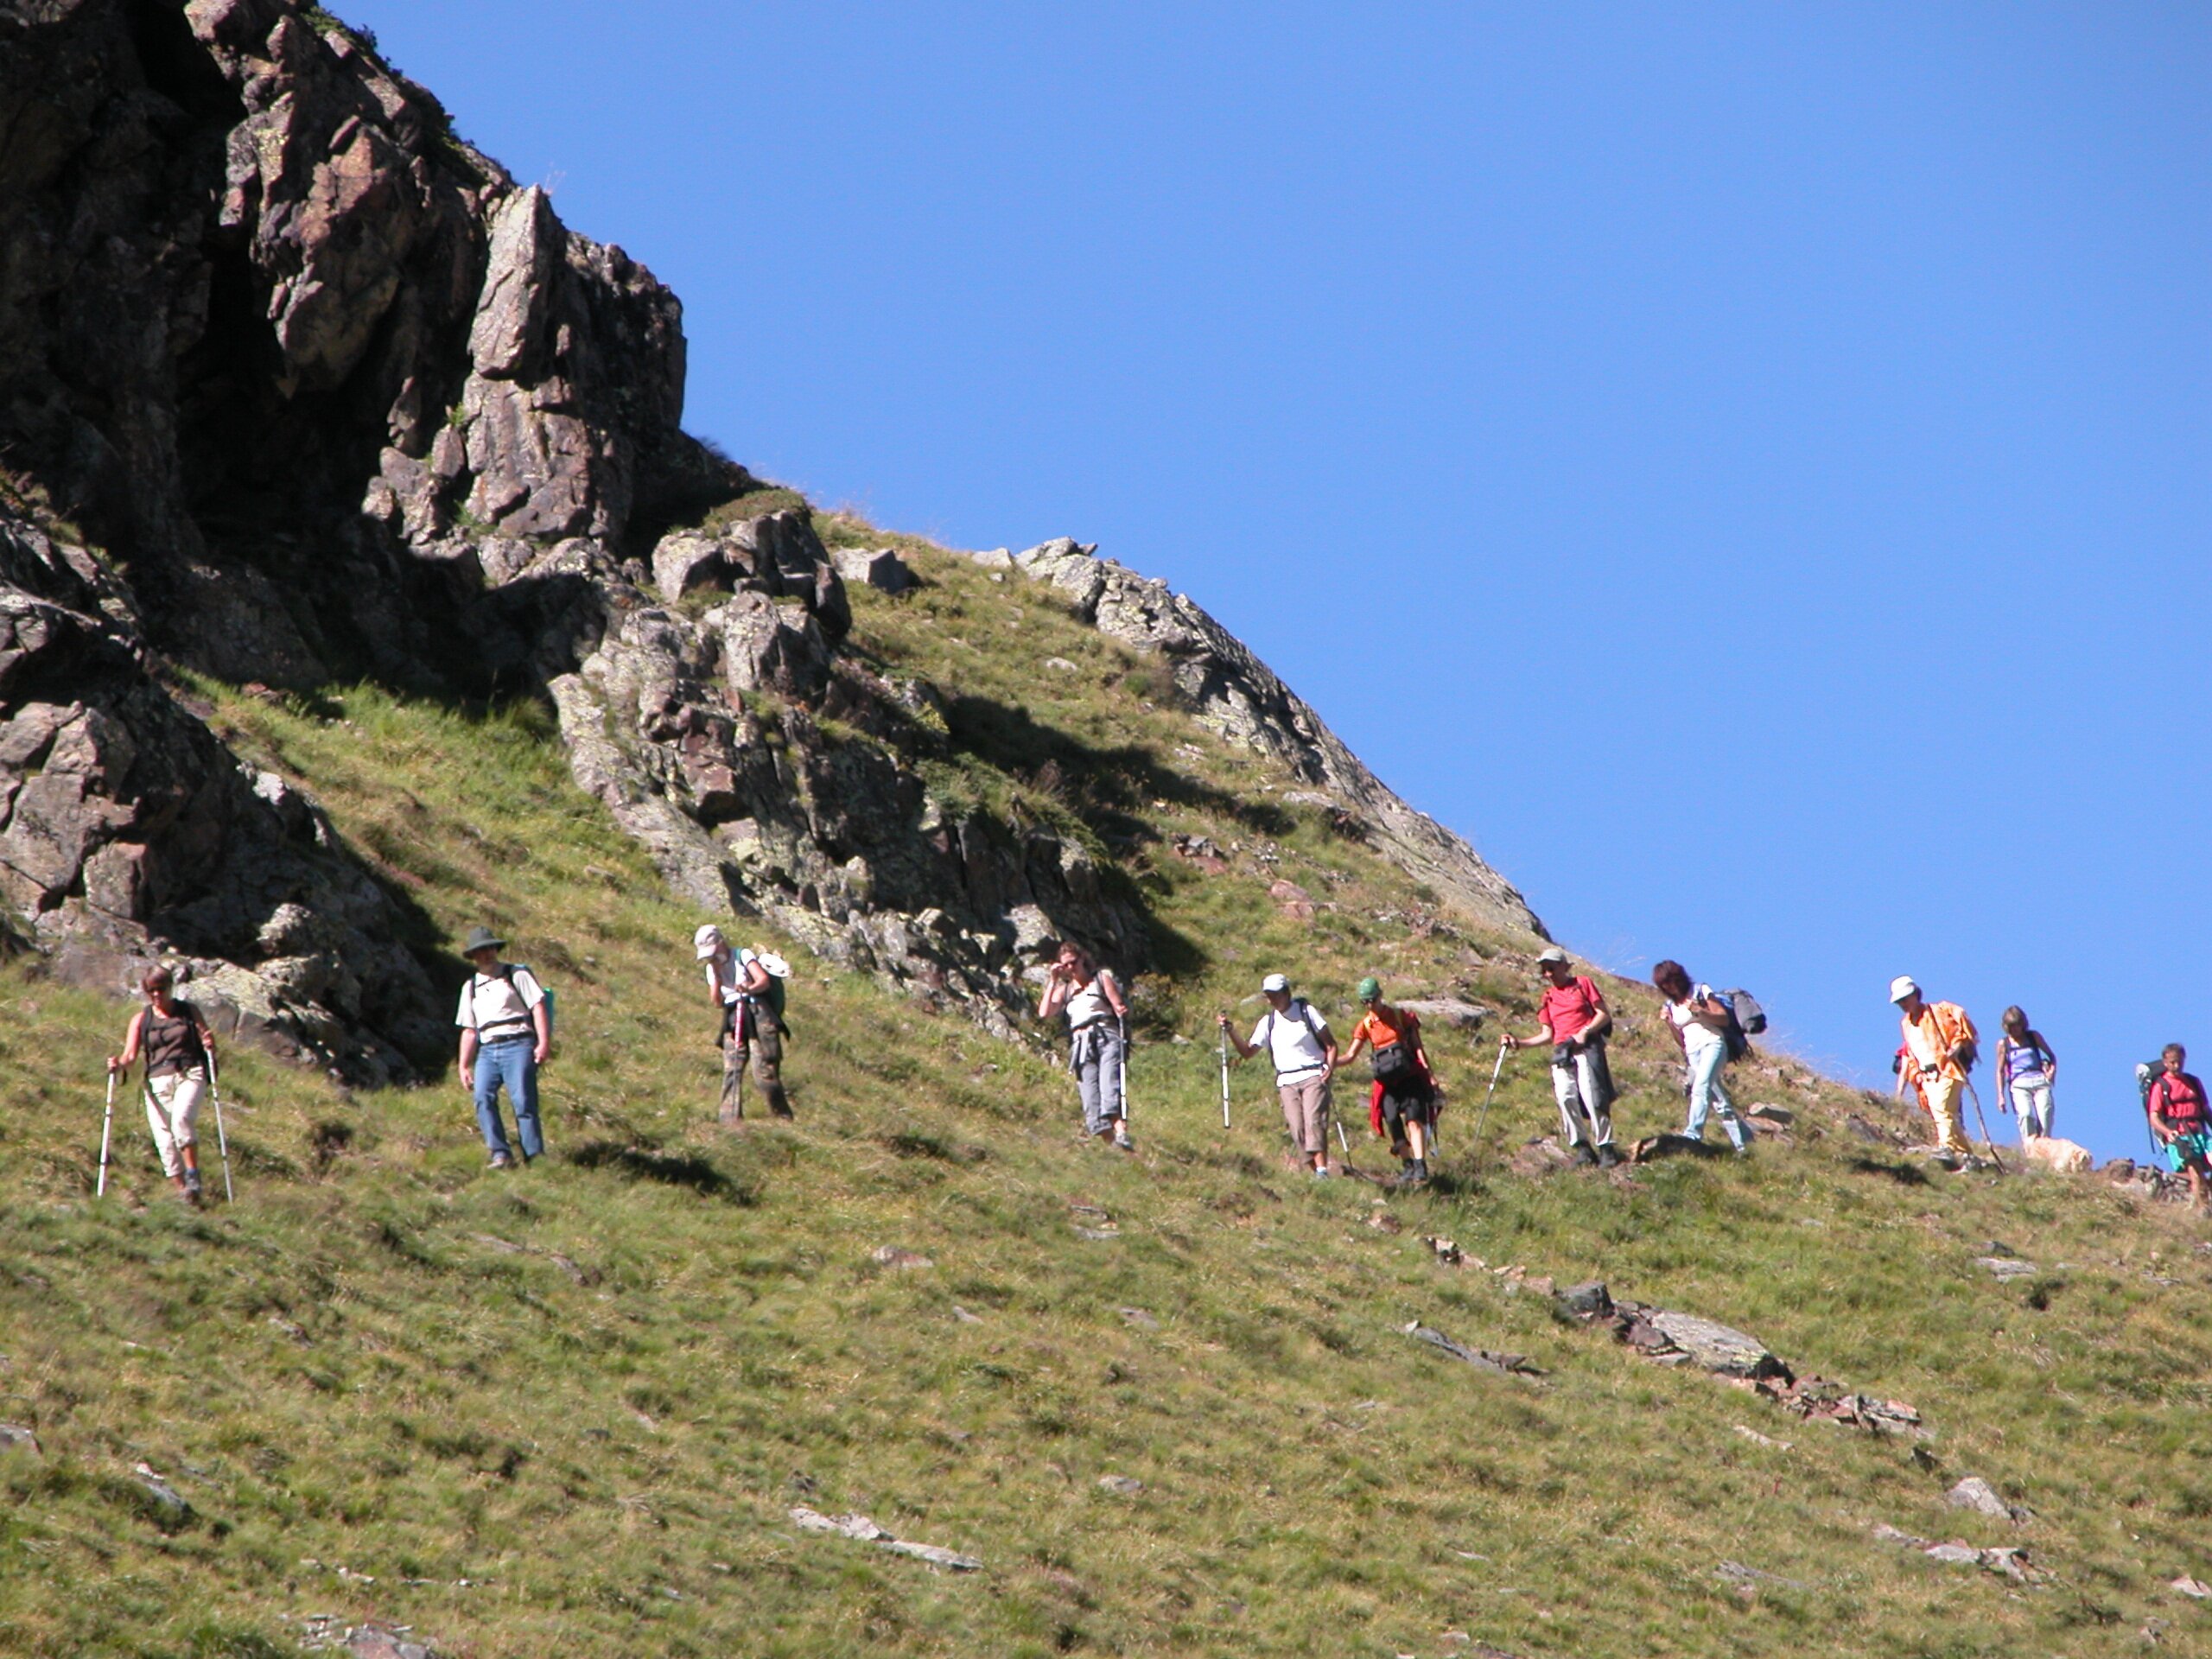 escursionisti attraversano in fila indiana il fianco di un pendio erboso. cielo azzurro